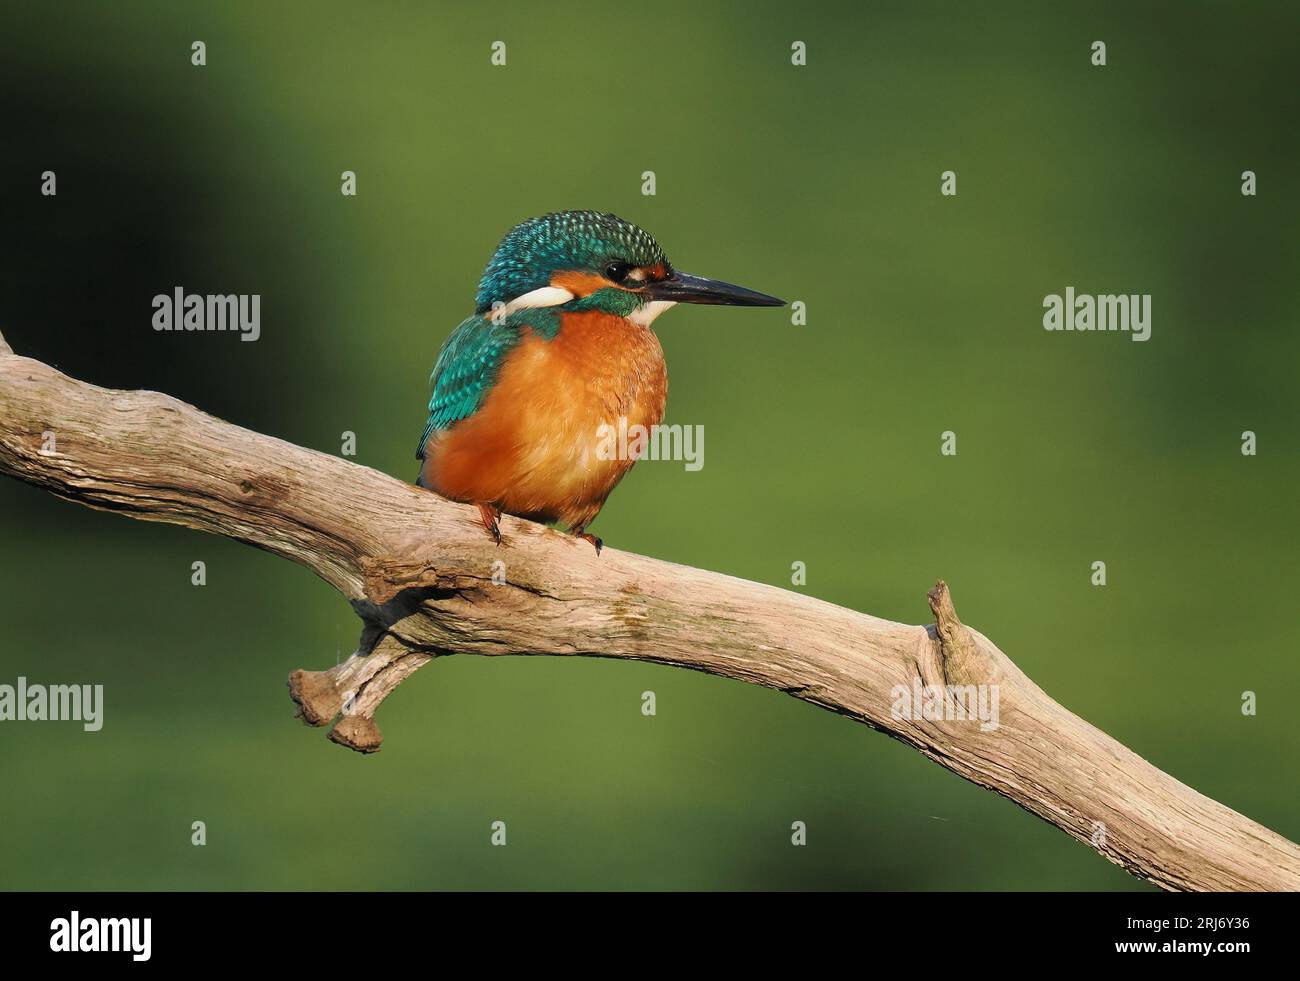 Kingfisher schaut sich gerne Barsche auf ihrem Territorium an, so dass Sie durch regelmäßiges Wechseln die Landungen erhöhen können. Stockfoto